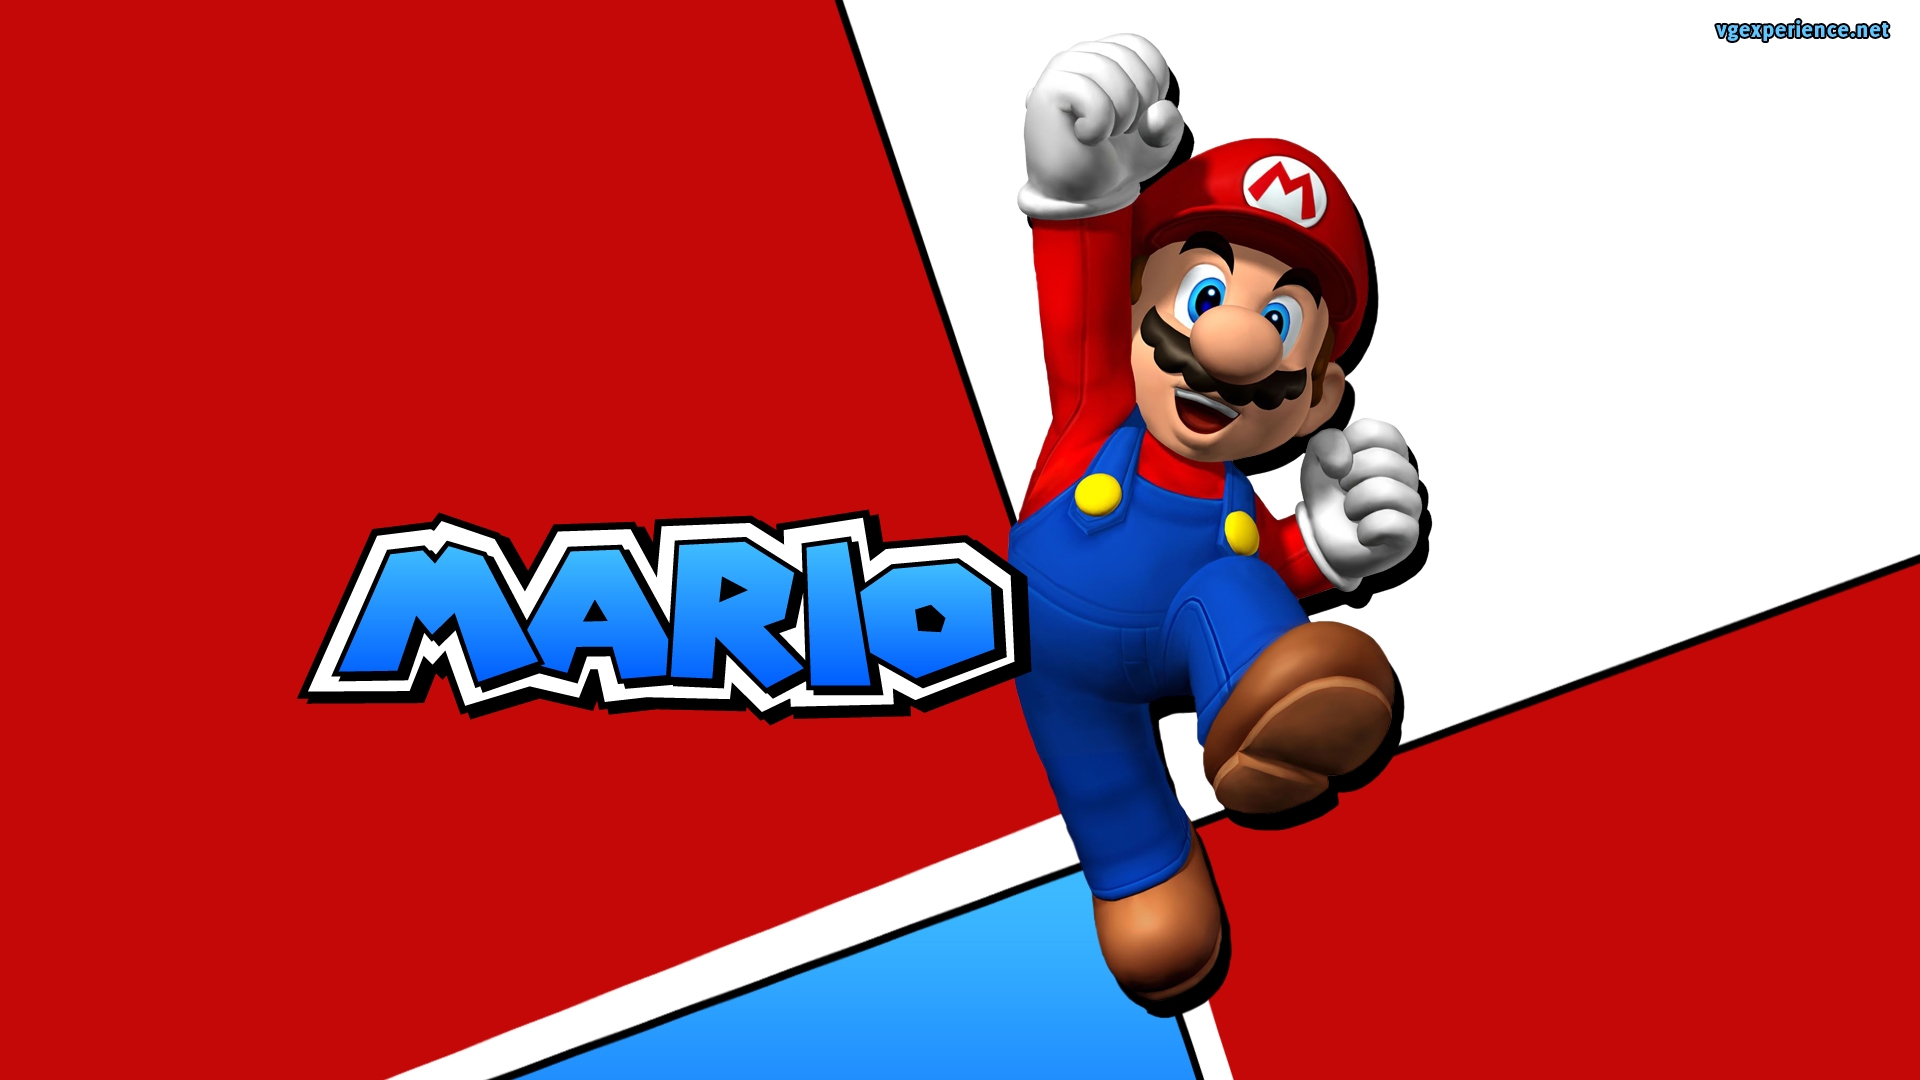 Mario bros advance